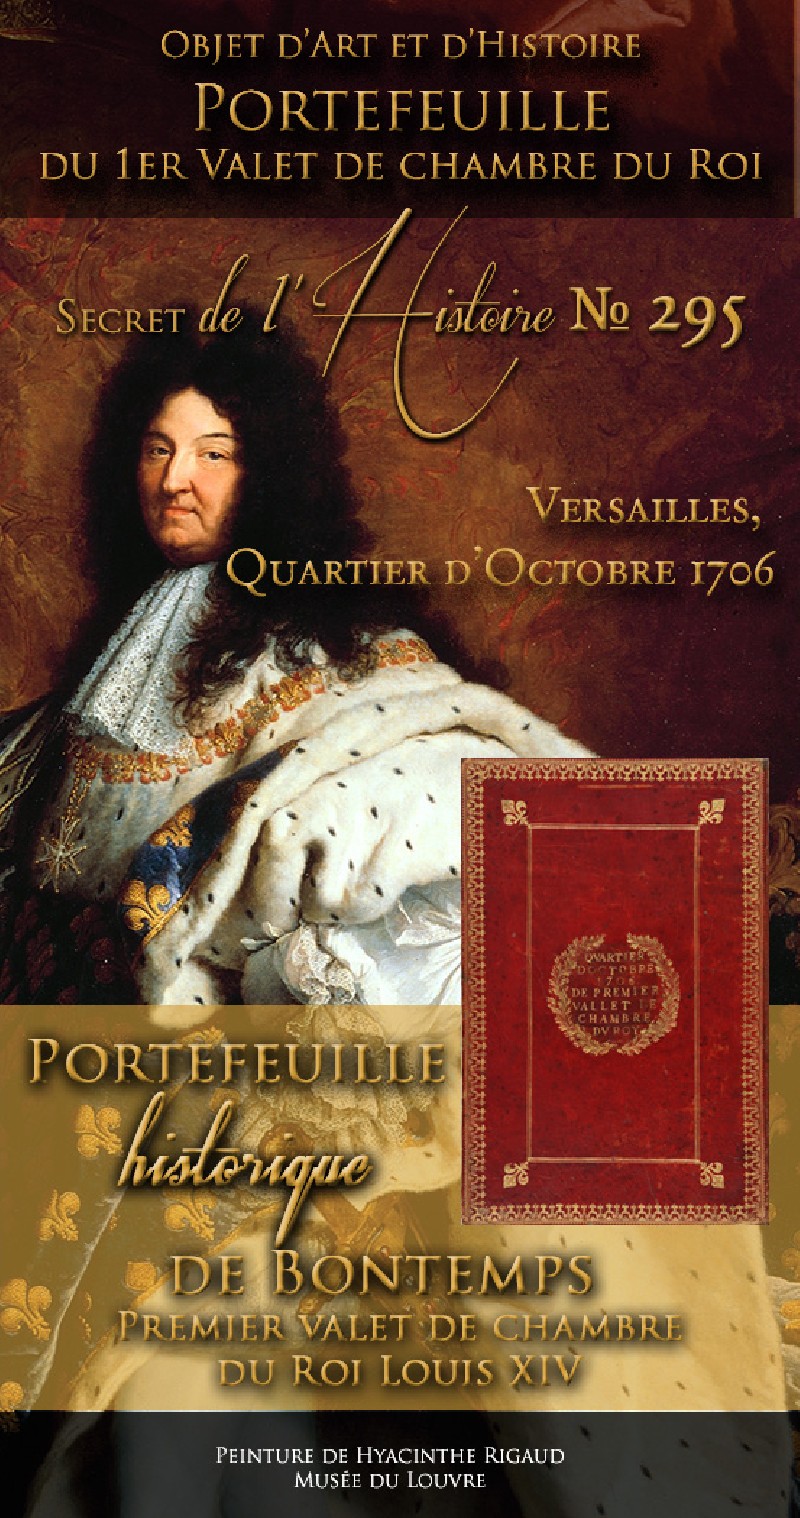 Le portefeuille du premier valet de chambre de Louis XIV